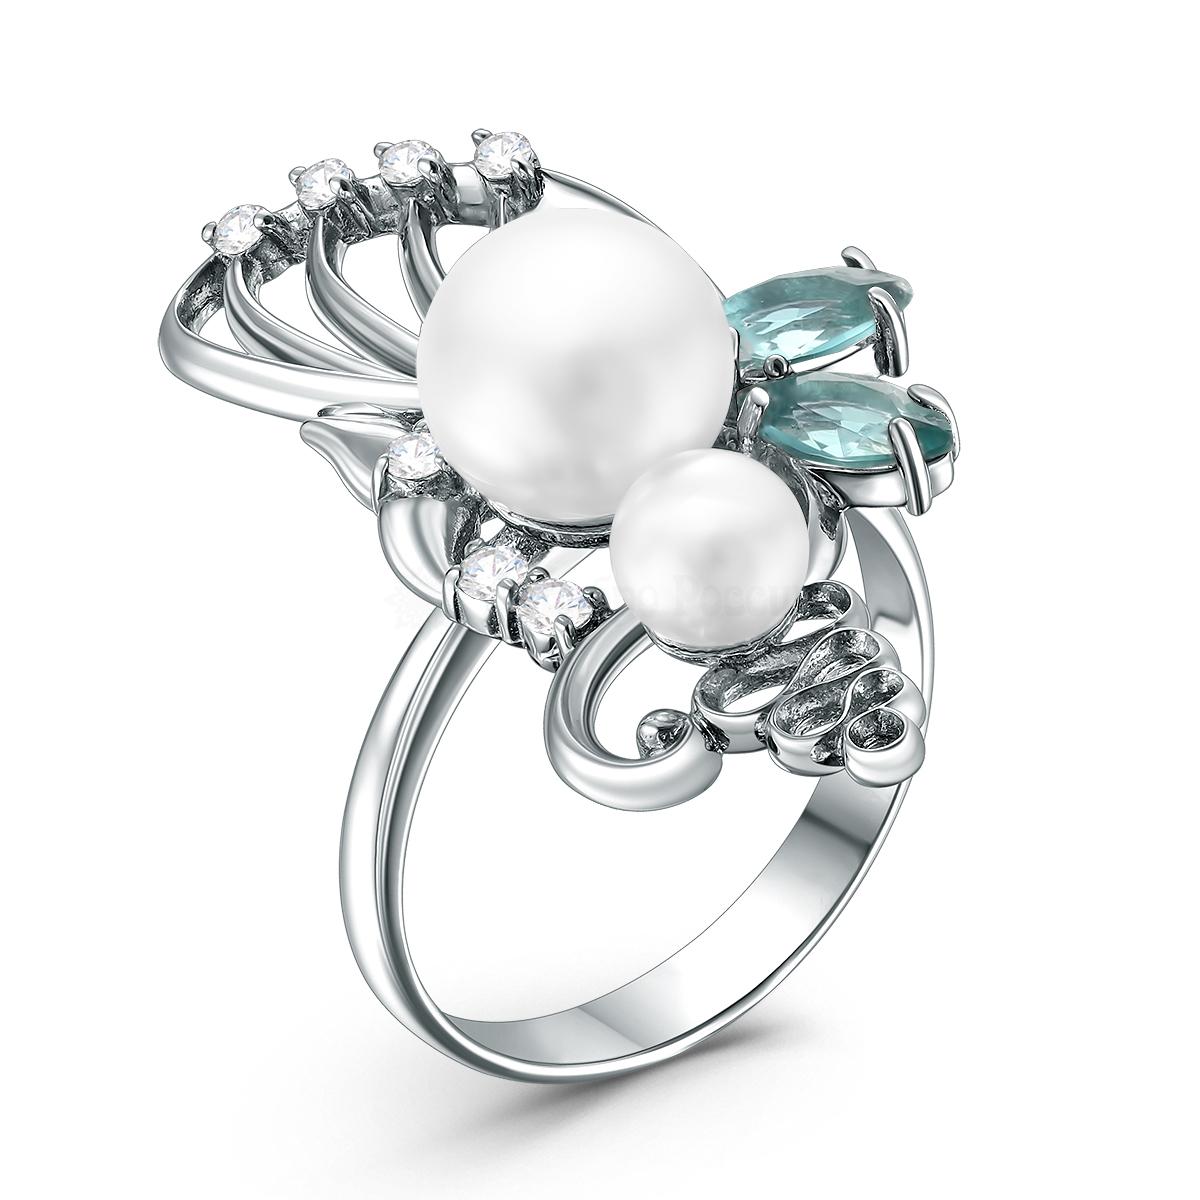 Кольцо из серебра с жемчугом Сваровски, плавленым кварцем цвета лондон топаз и фианитами родированное К-3120рк80411100